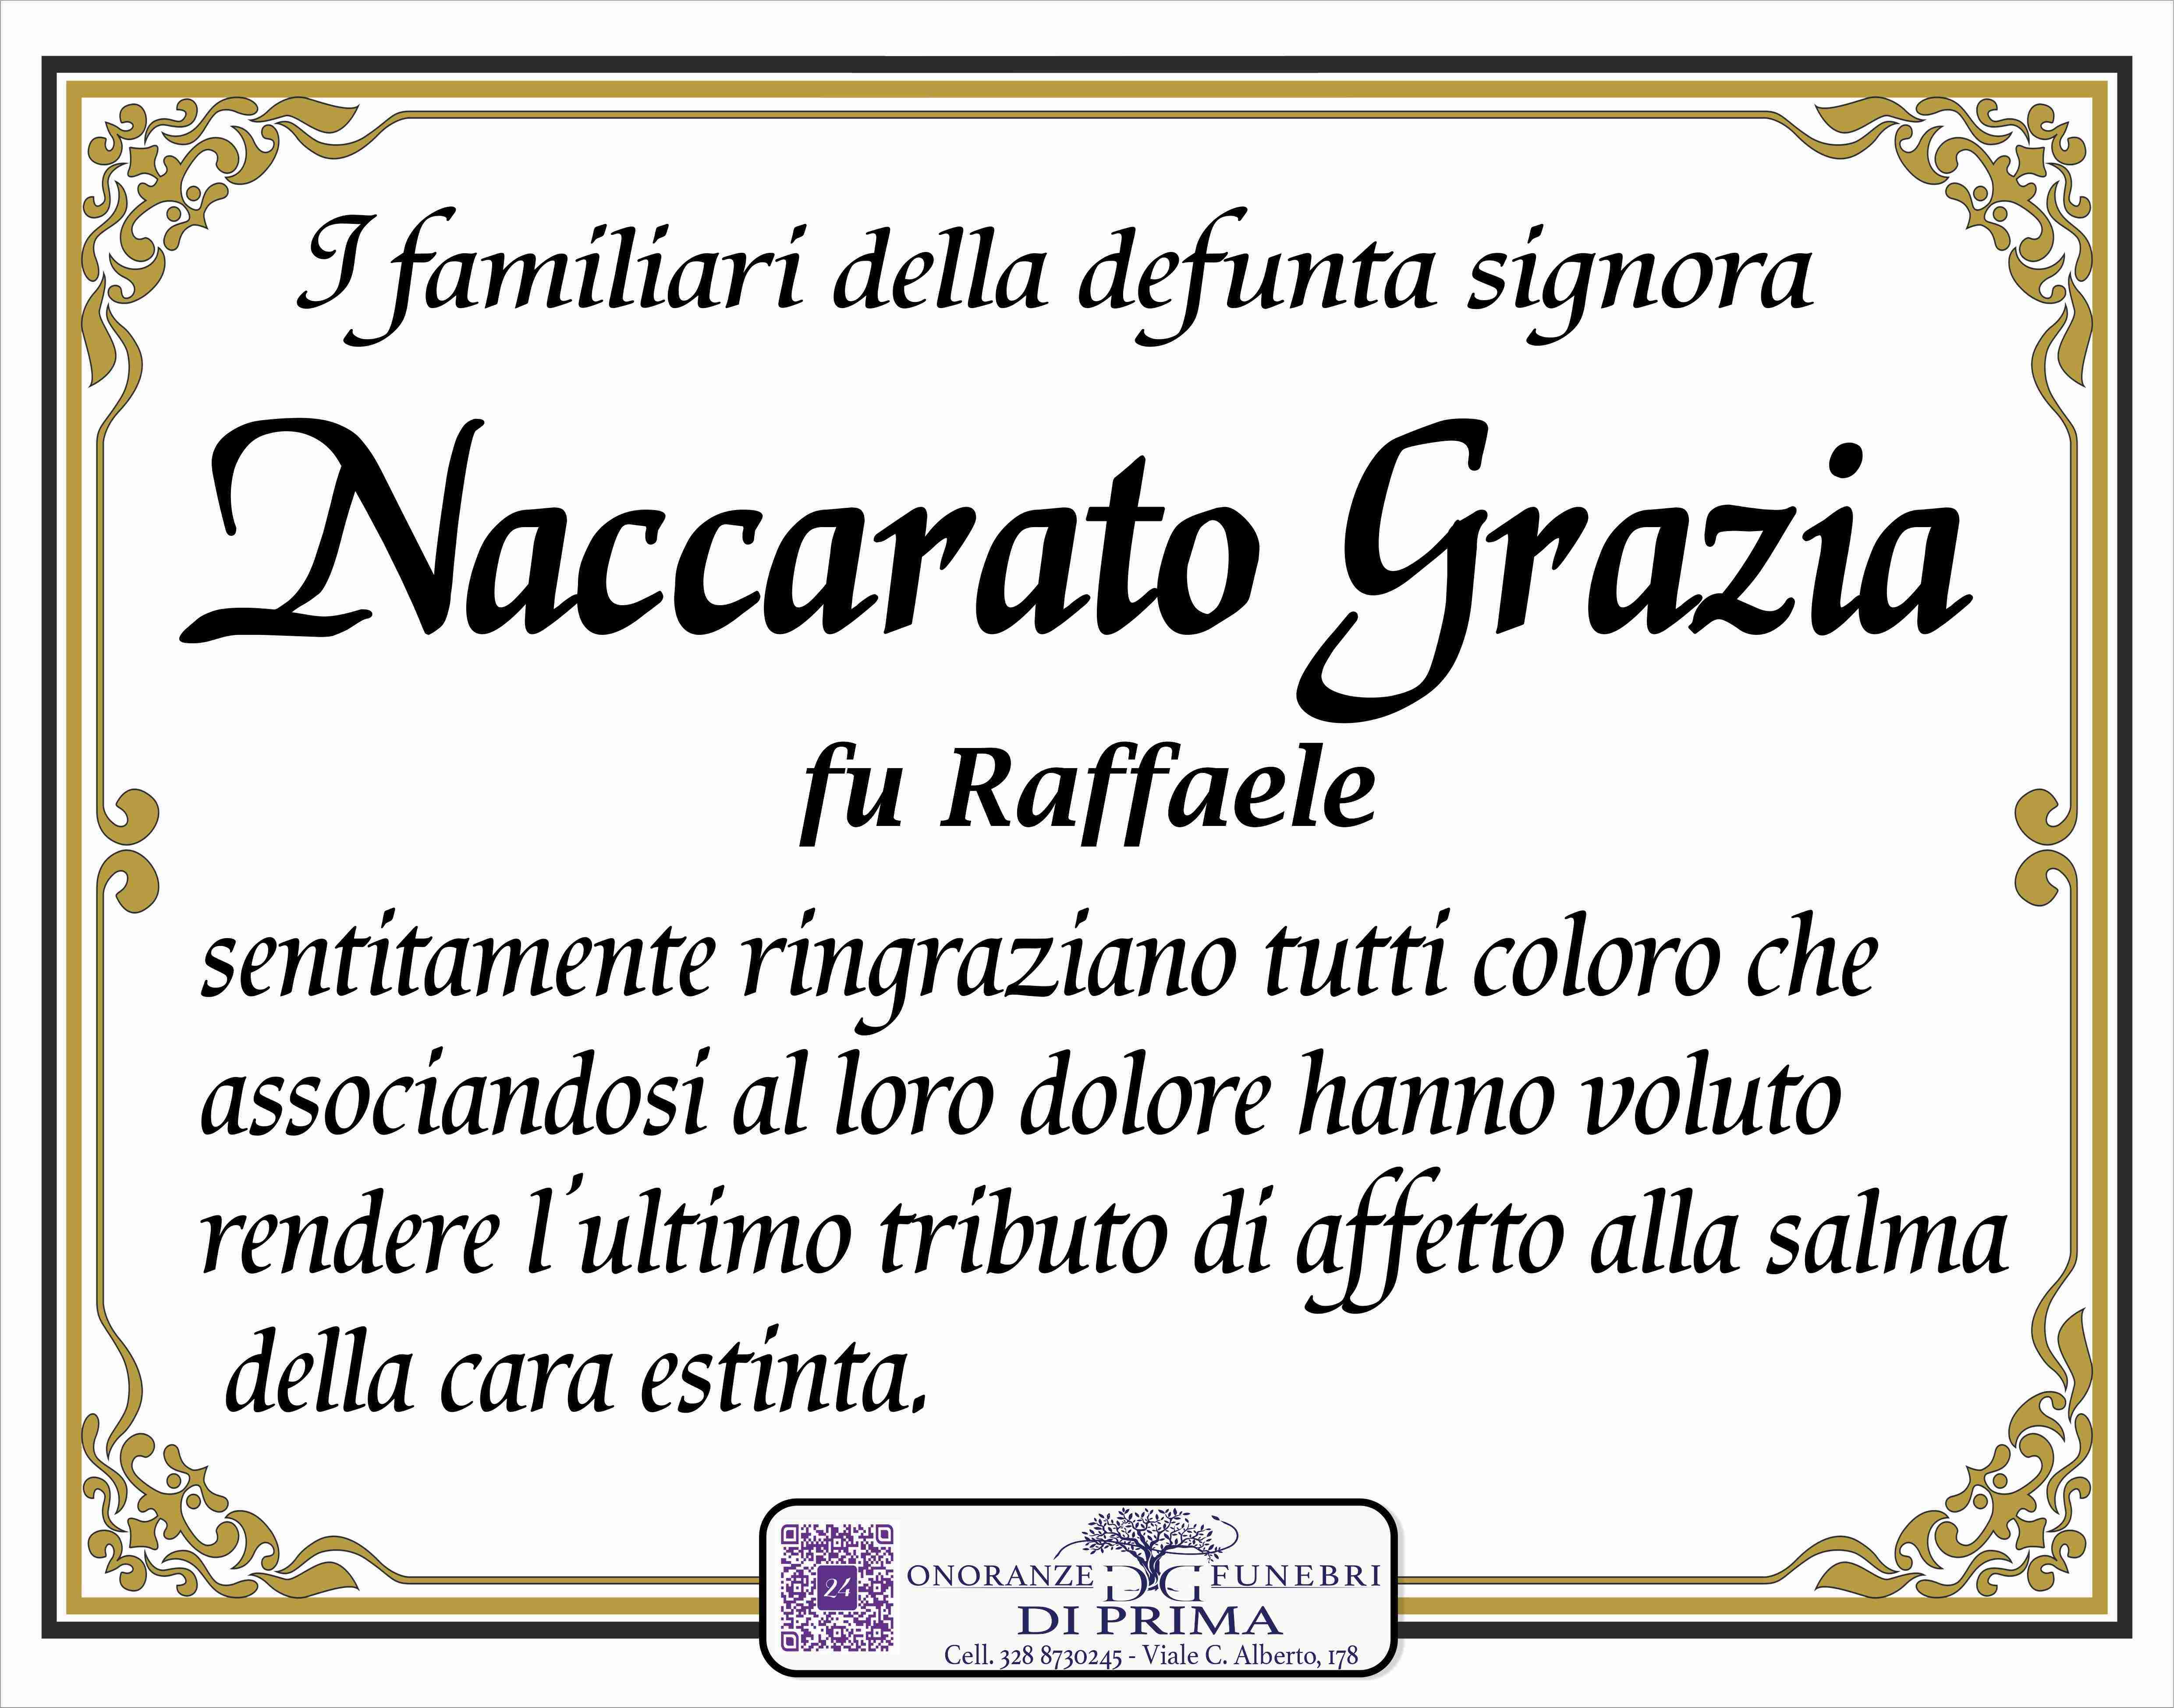 Grazia Naccarato